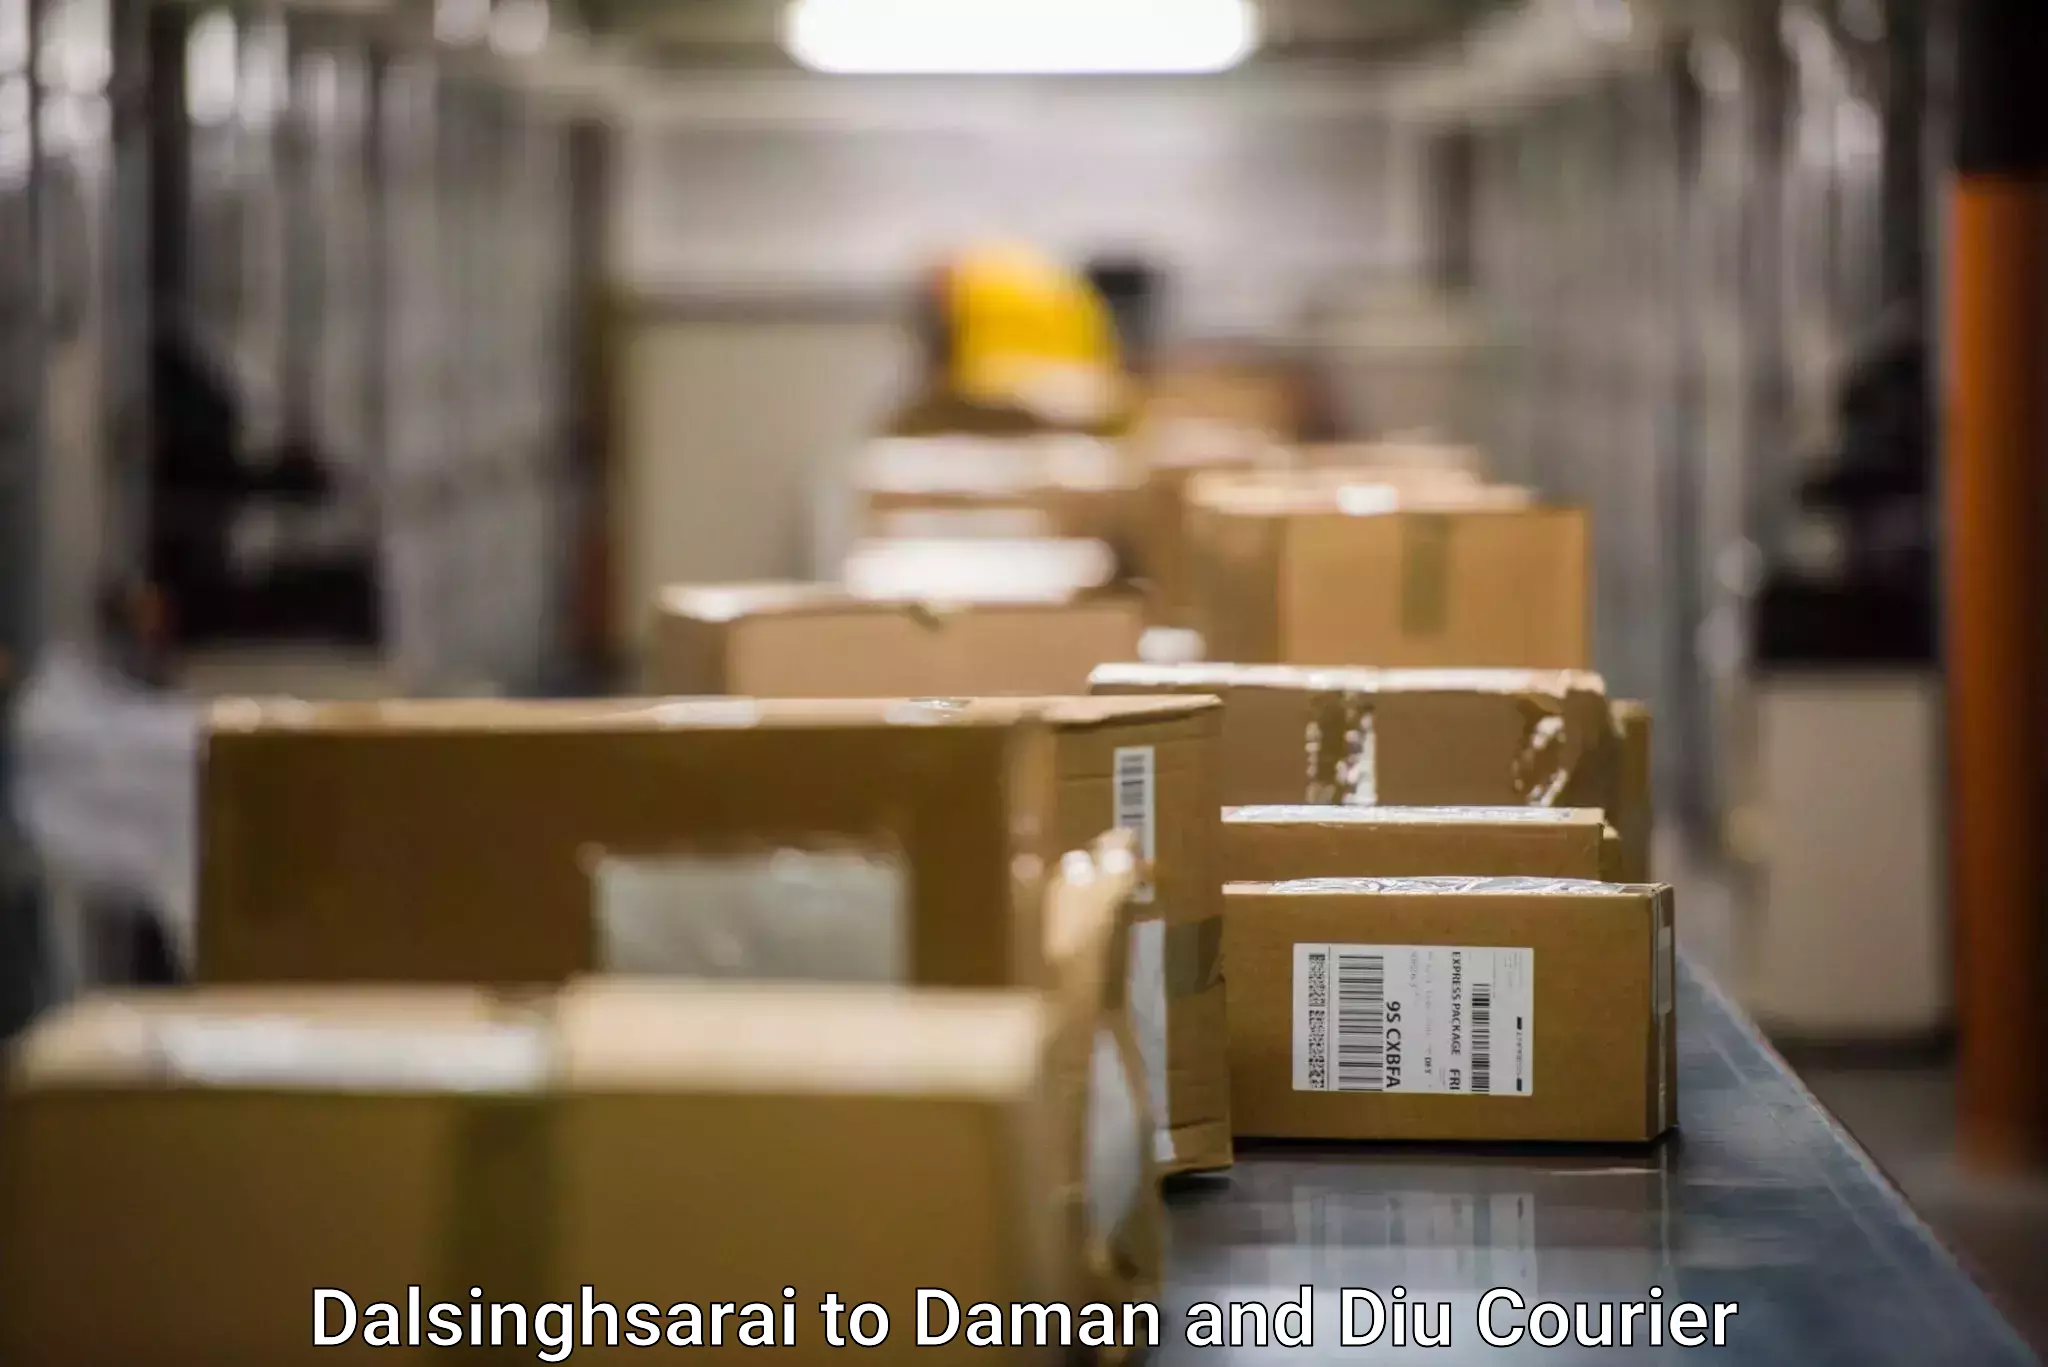 Regular parcel service in Dalsinghsarai to Diu